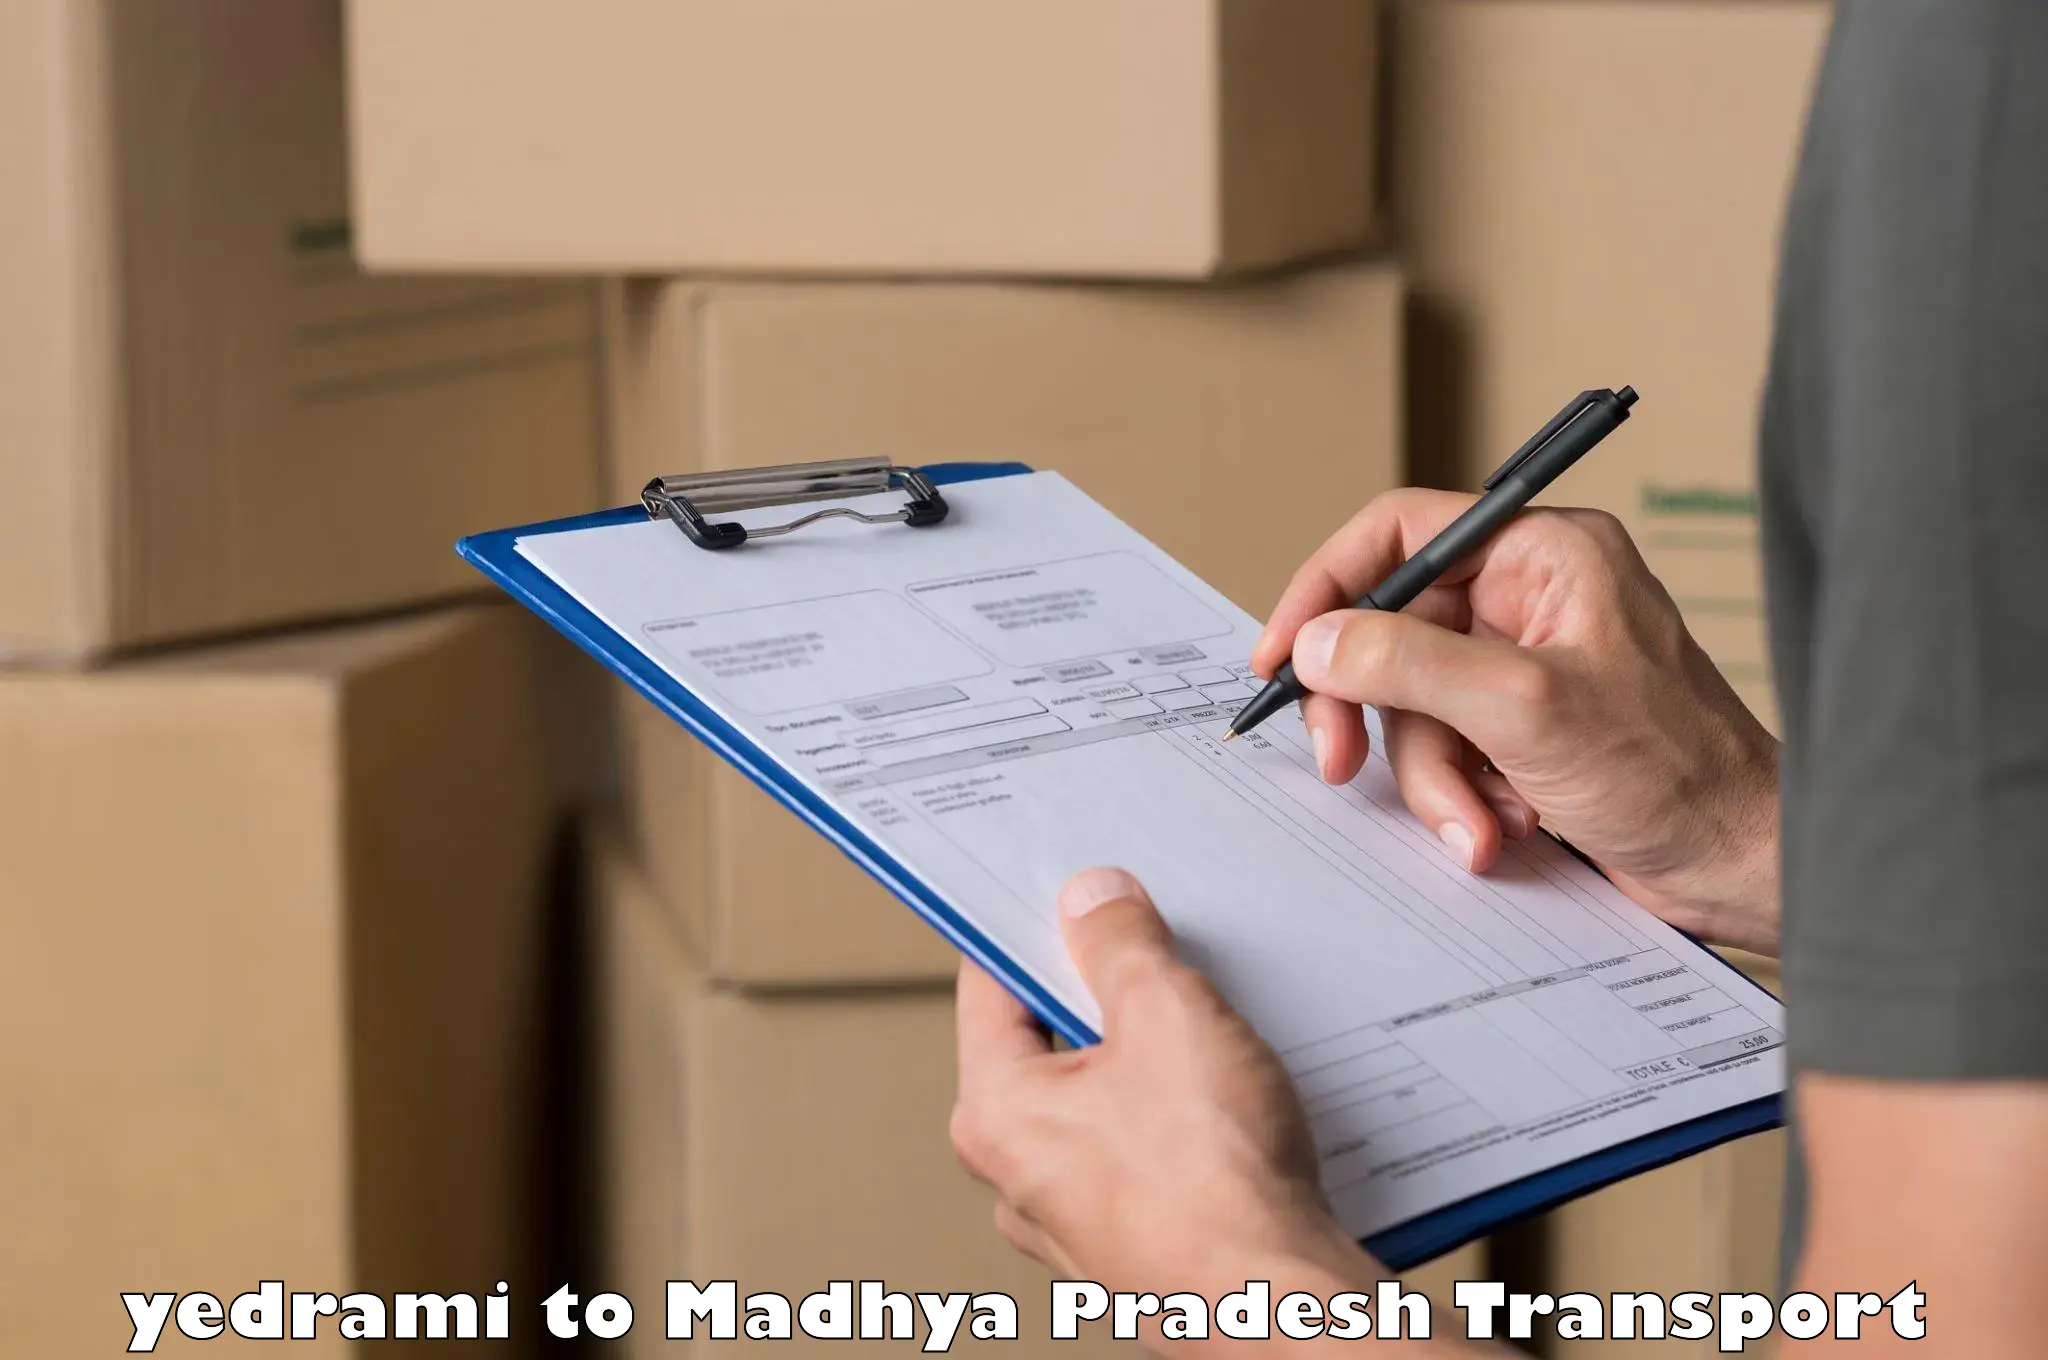 Shipping services yedrami to Gadarwara